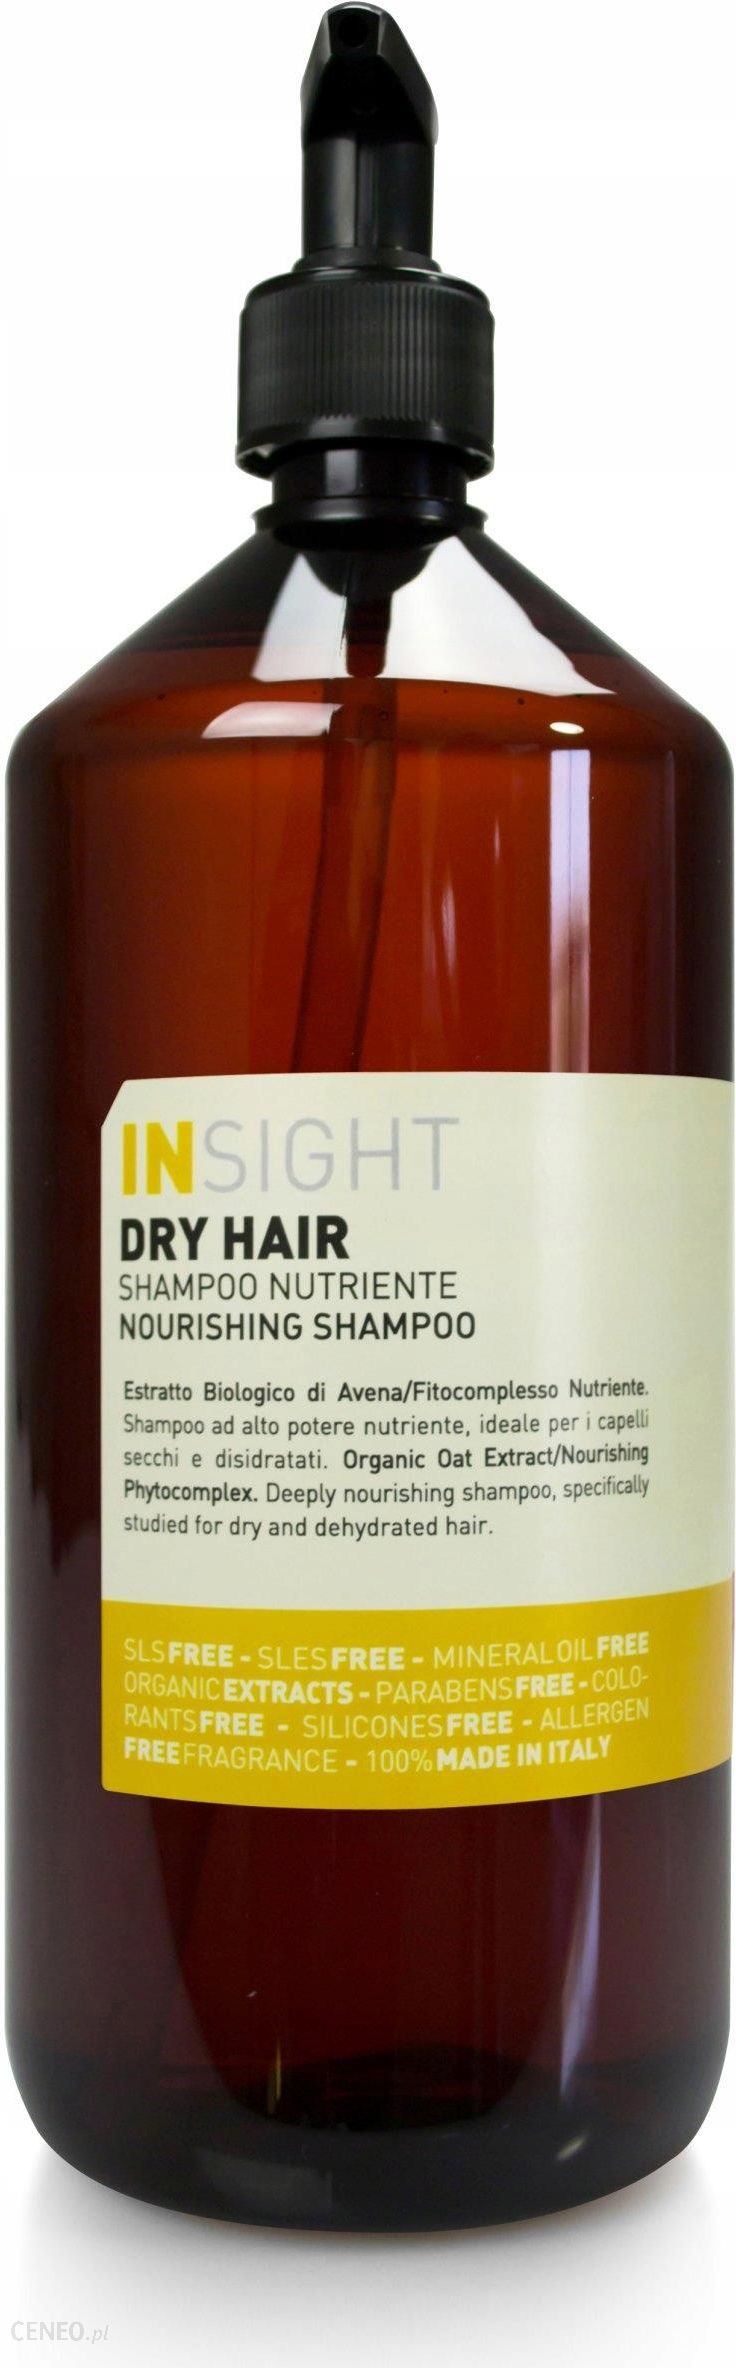 nourishing shampoo szampon odżywczy do włosów suchych insight